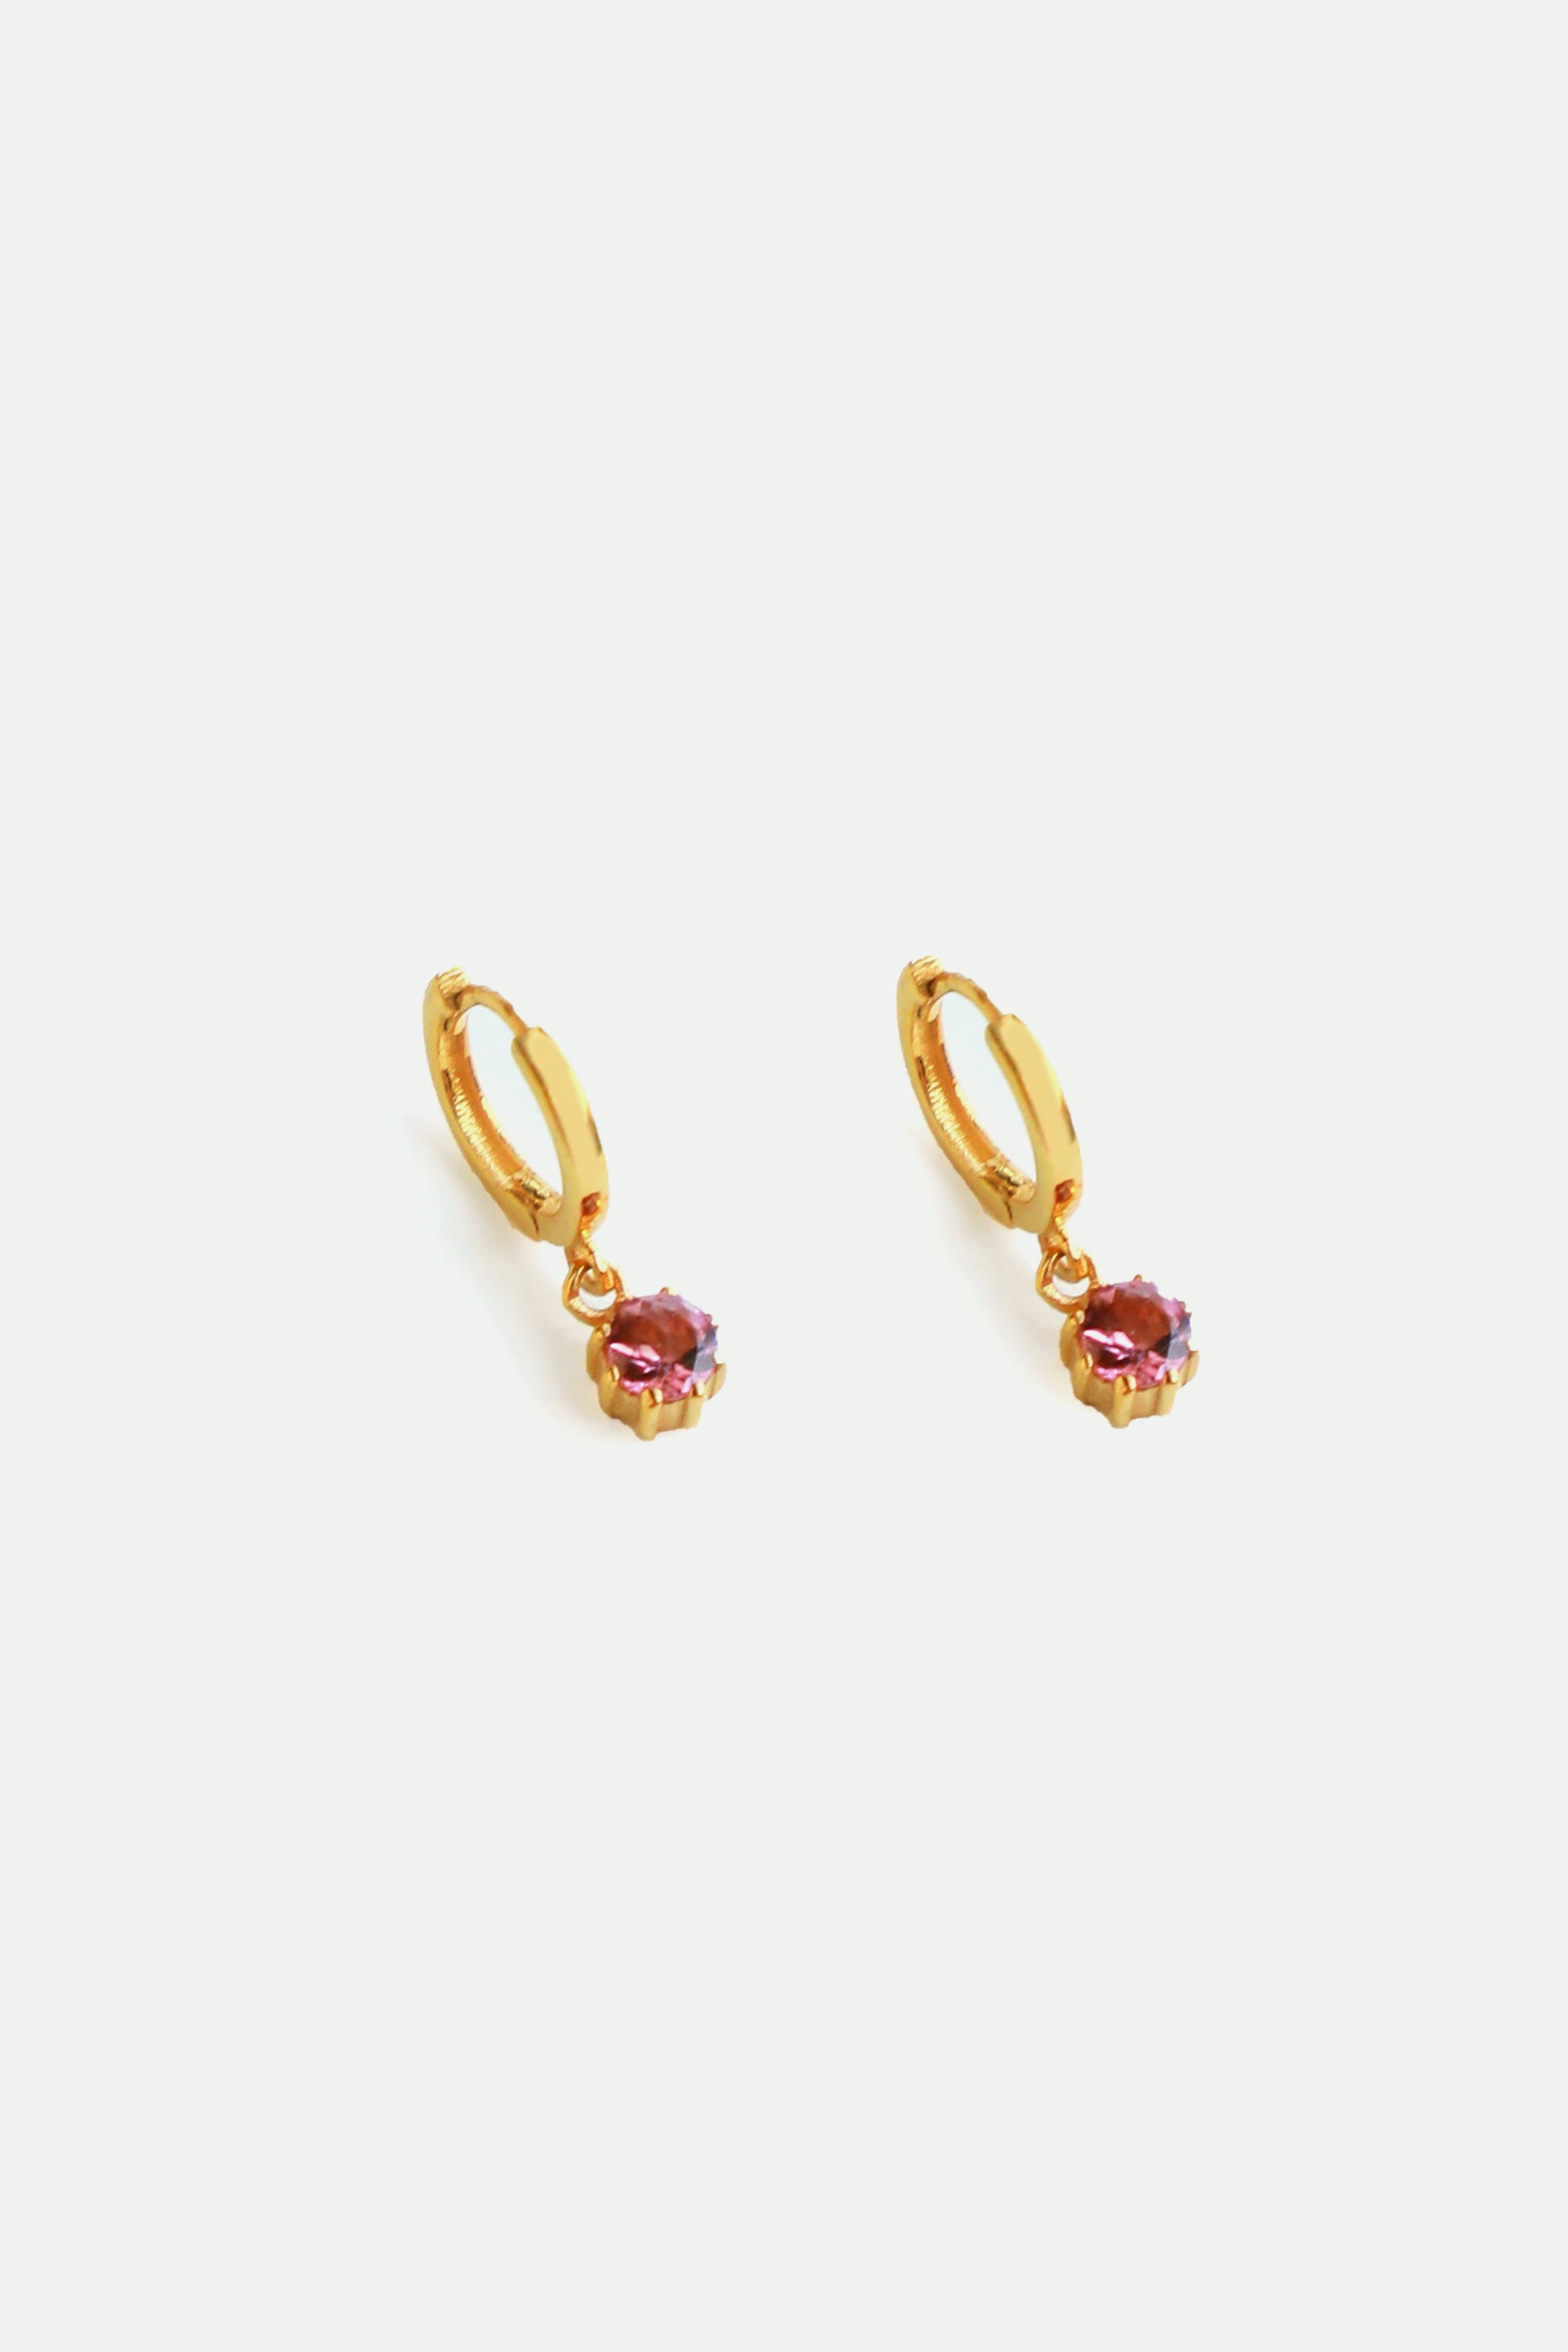 14K Gold Zircon Teddy Bear Screw Back Girls Earrings | Begonia Jewelry